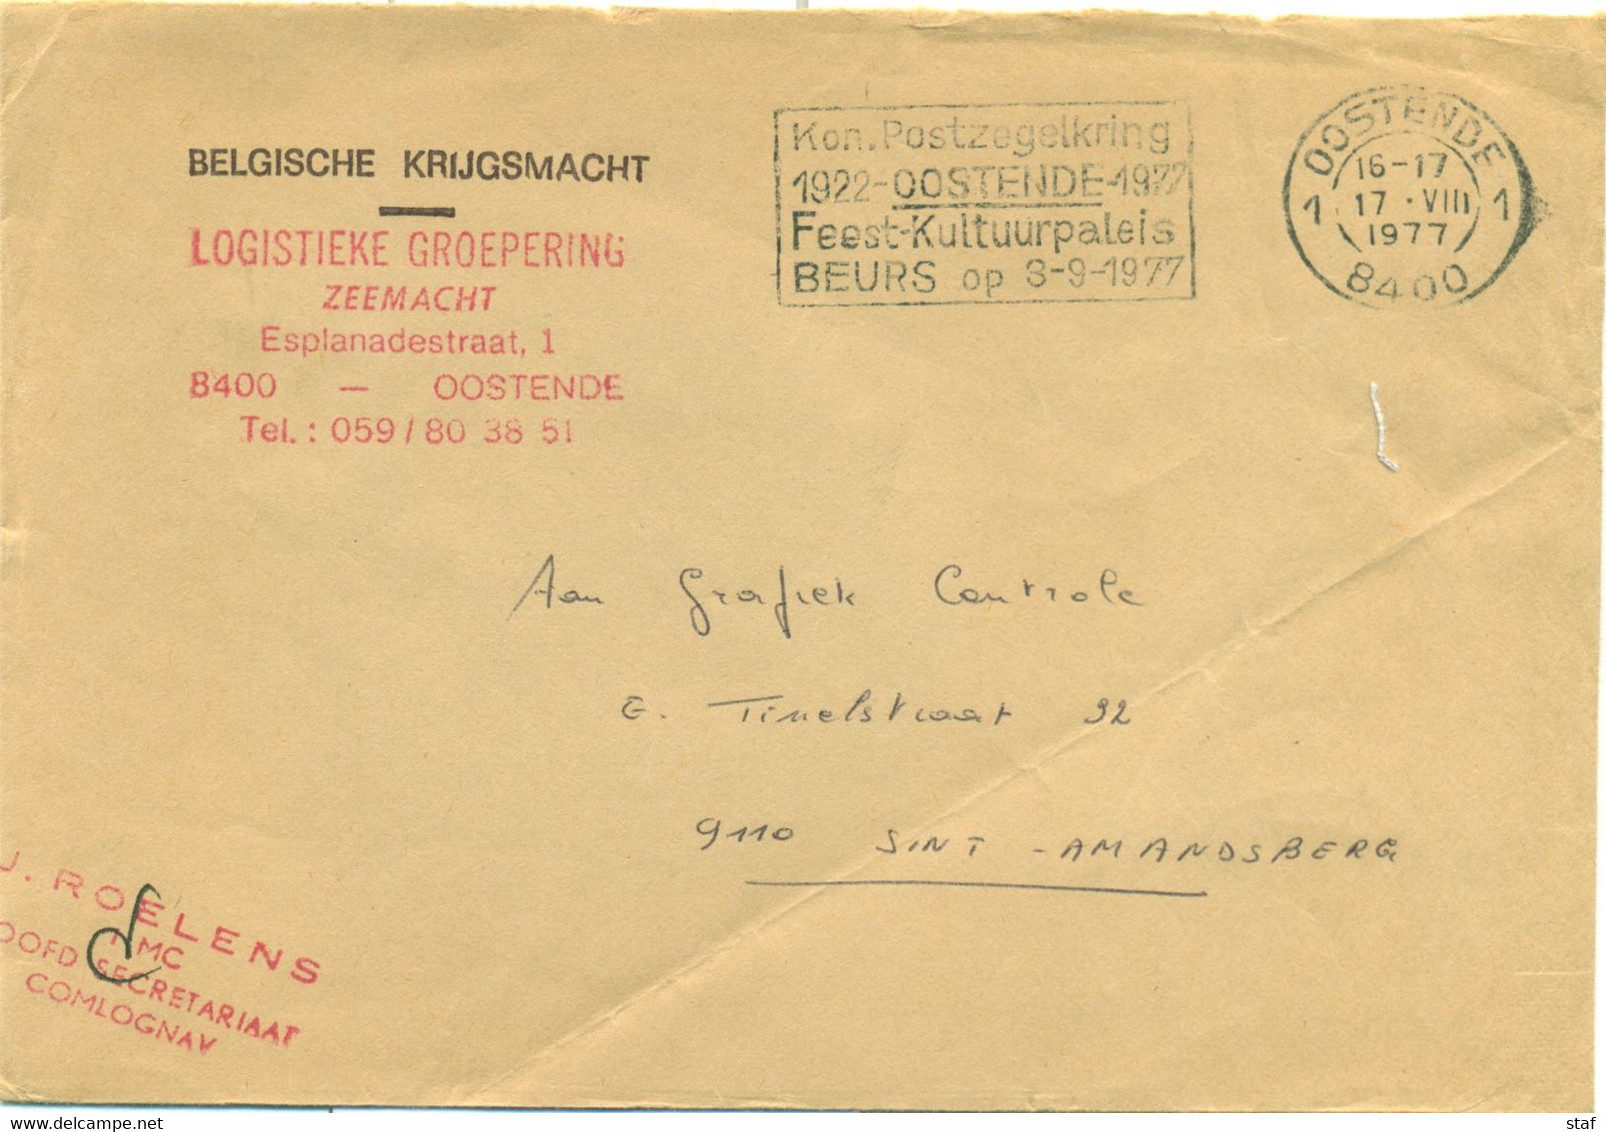 Kon. Postzegelkring Oostende 1922 - 1977 Feest-Kultuurpaleis Beurs Op 3-9-1977 - Vlagstempels